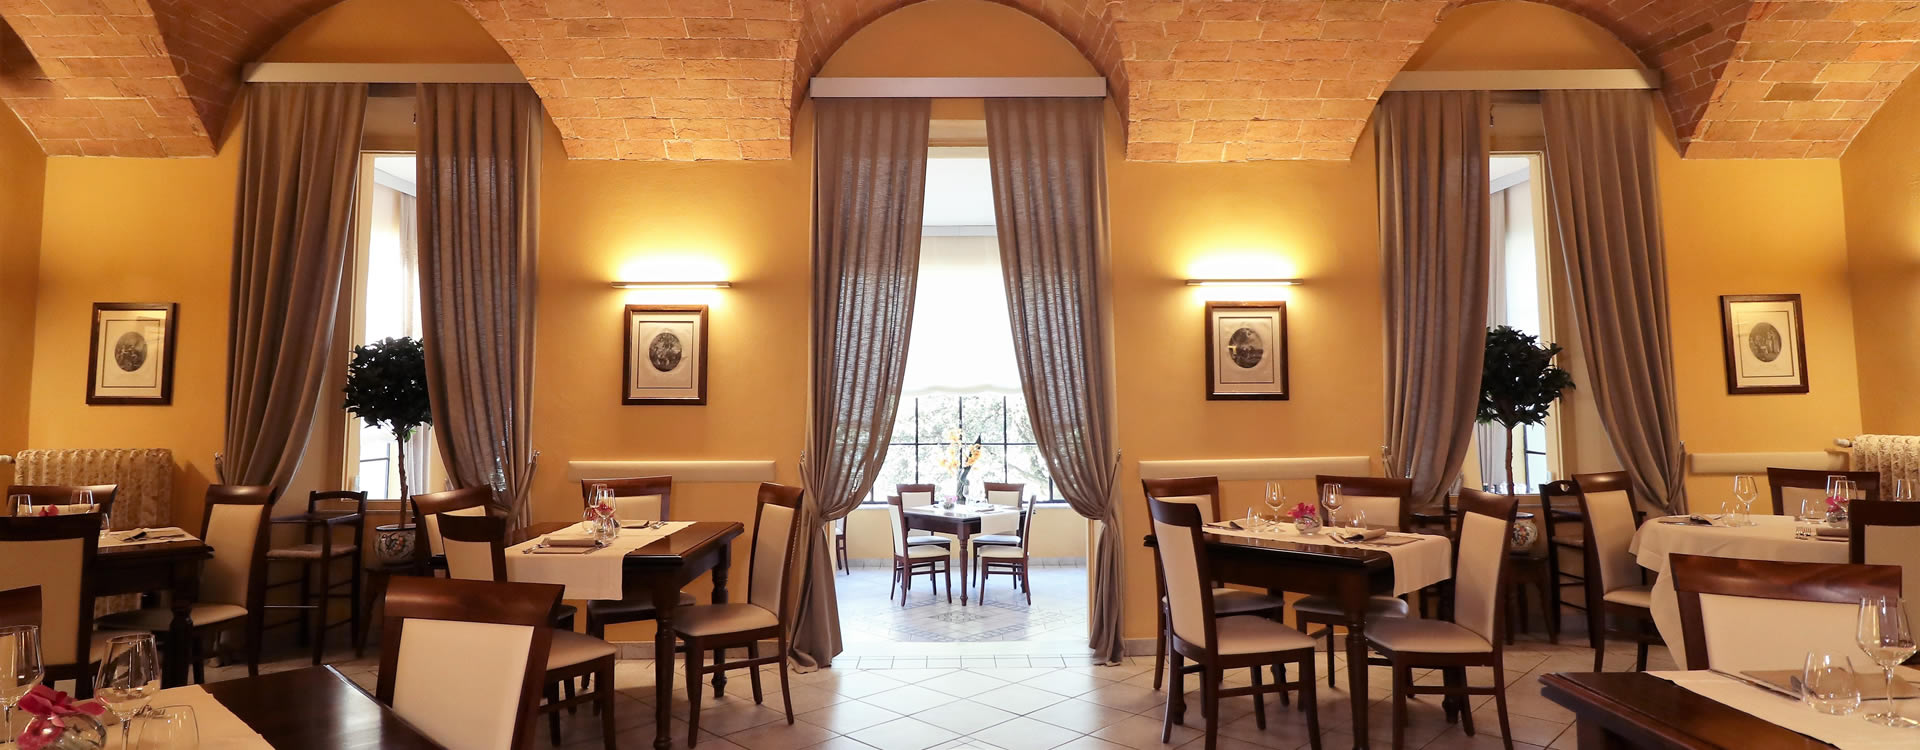 Ristorante Siena centro storico cucina tradizionale toscana